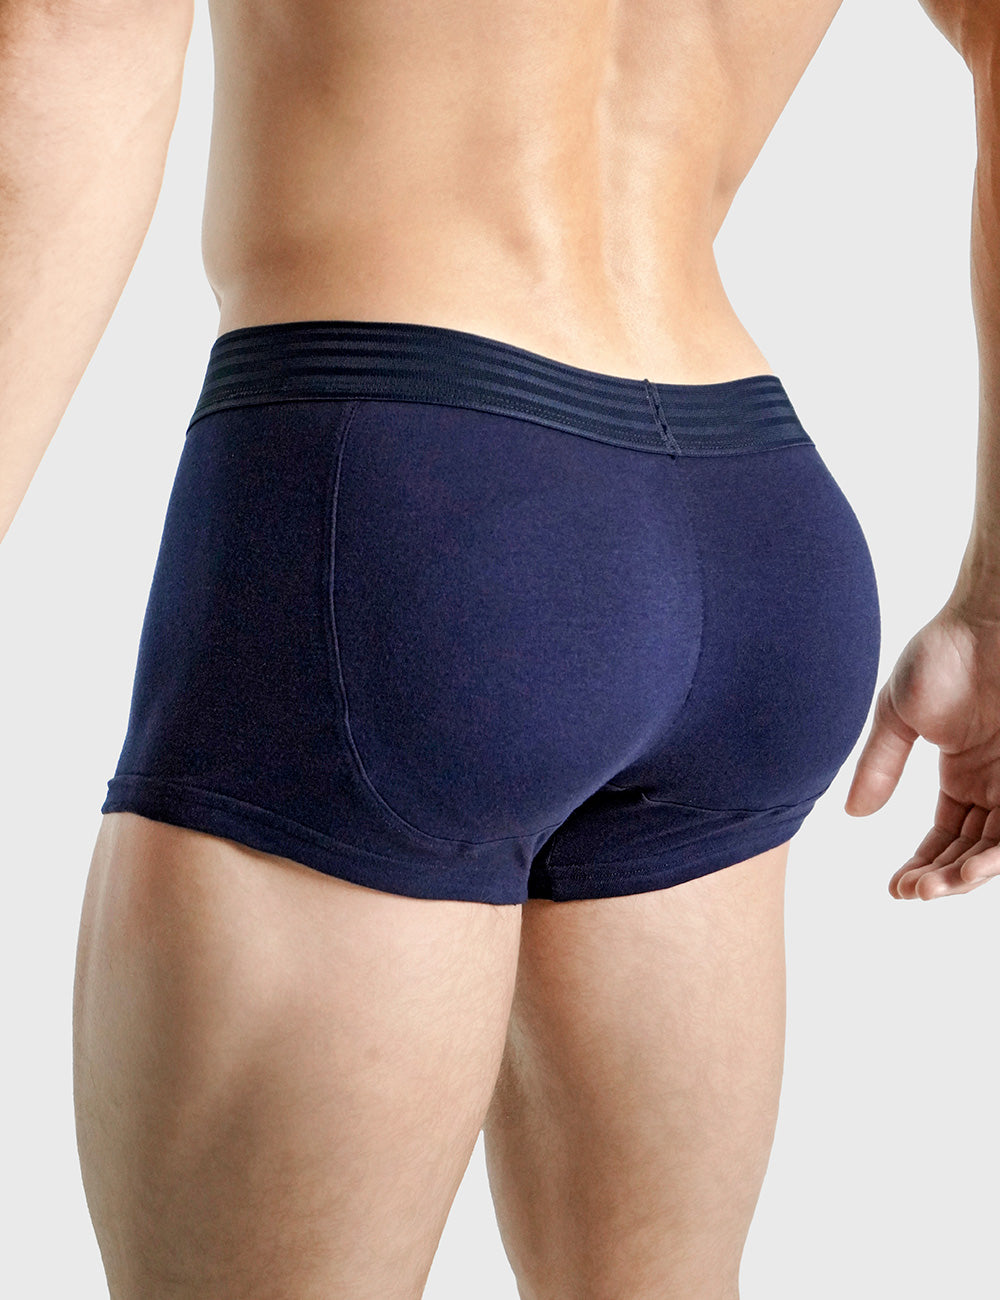 Navy Butt Padded Underwear Briefs Rounderbum